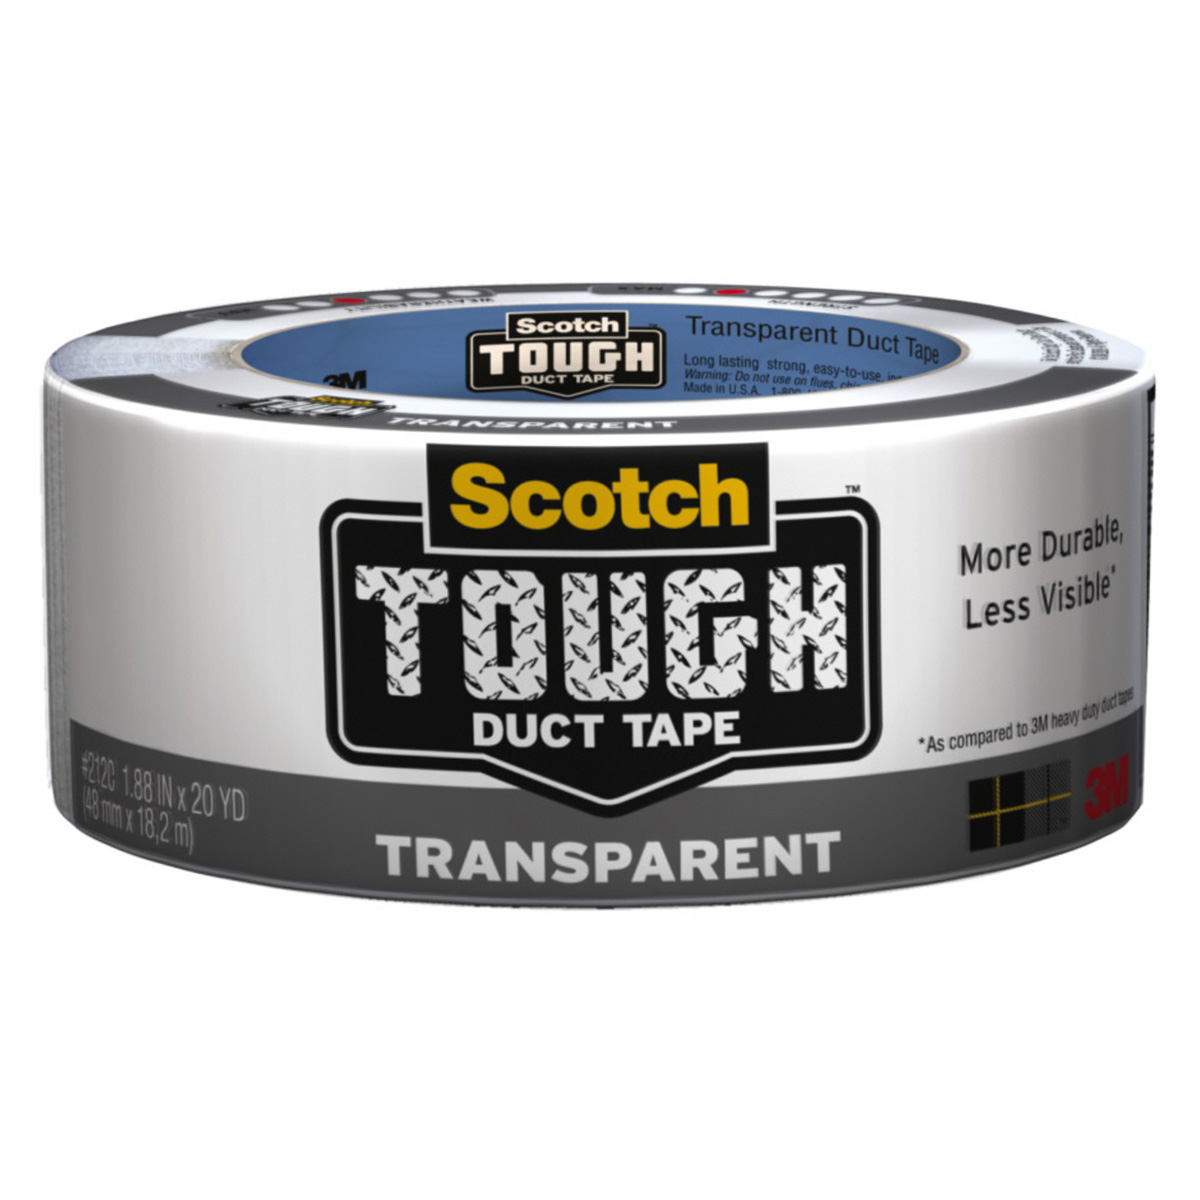 Scotch Tough High per ft Transparent Duct Tape - 1.88 IN x 20 YD